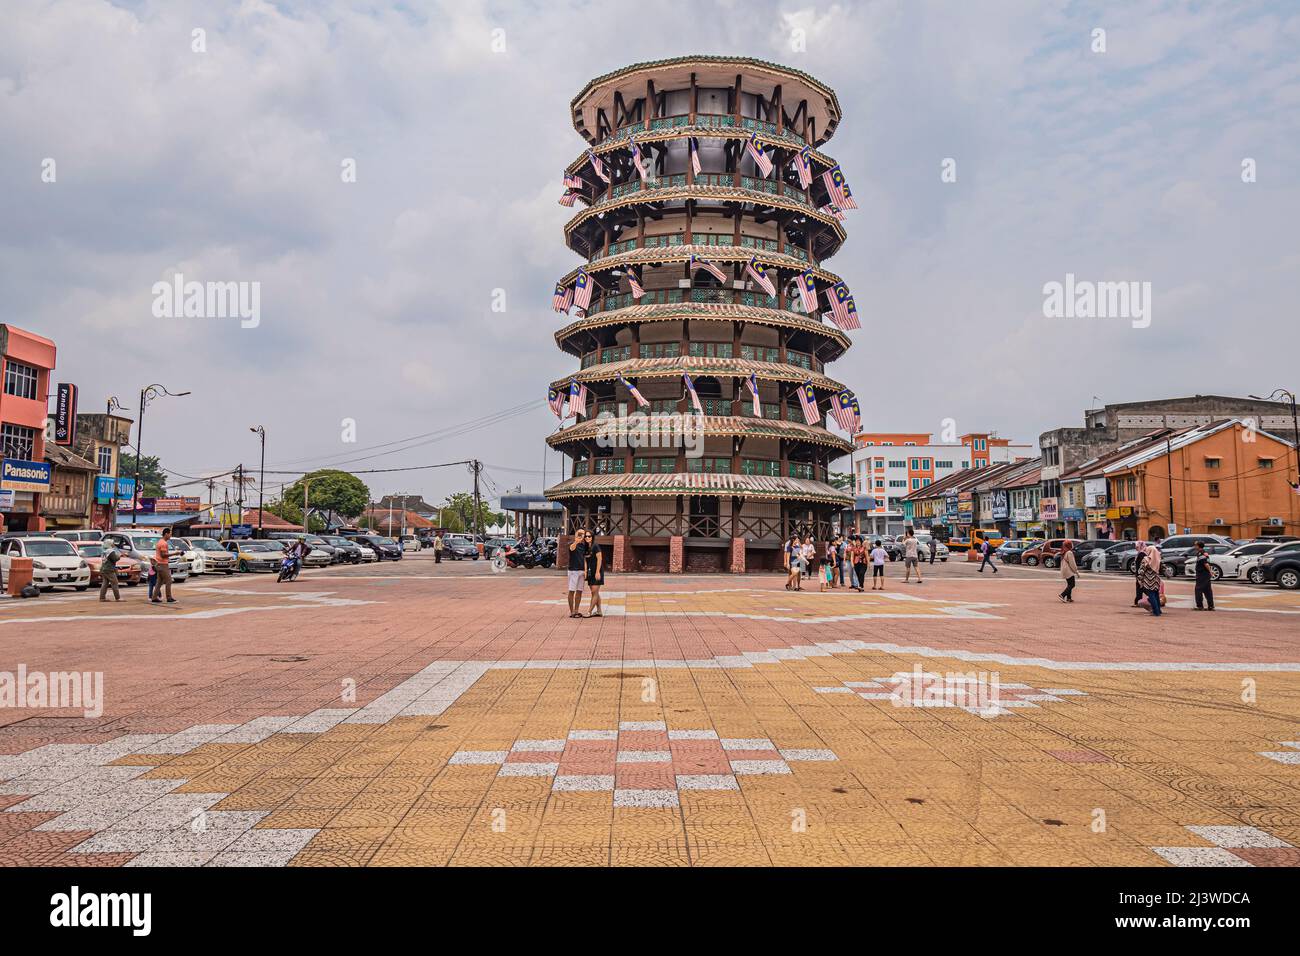 The Leaning Tower of Teluk Intan in Perak, Malaysia. Stock Photo